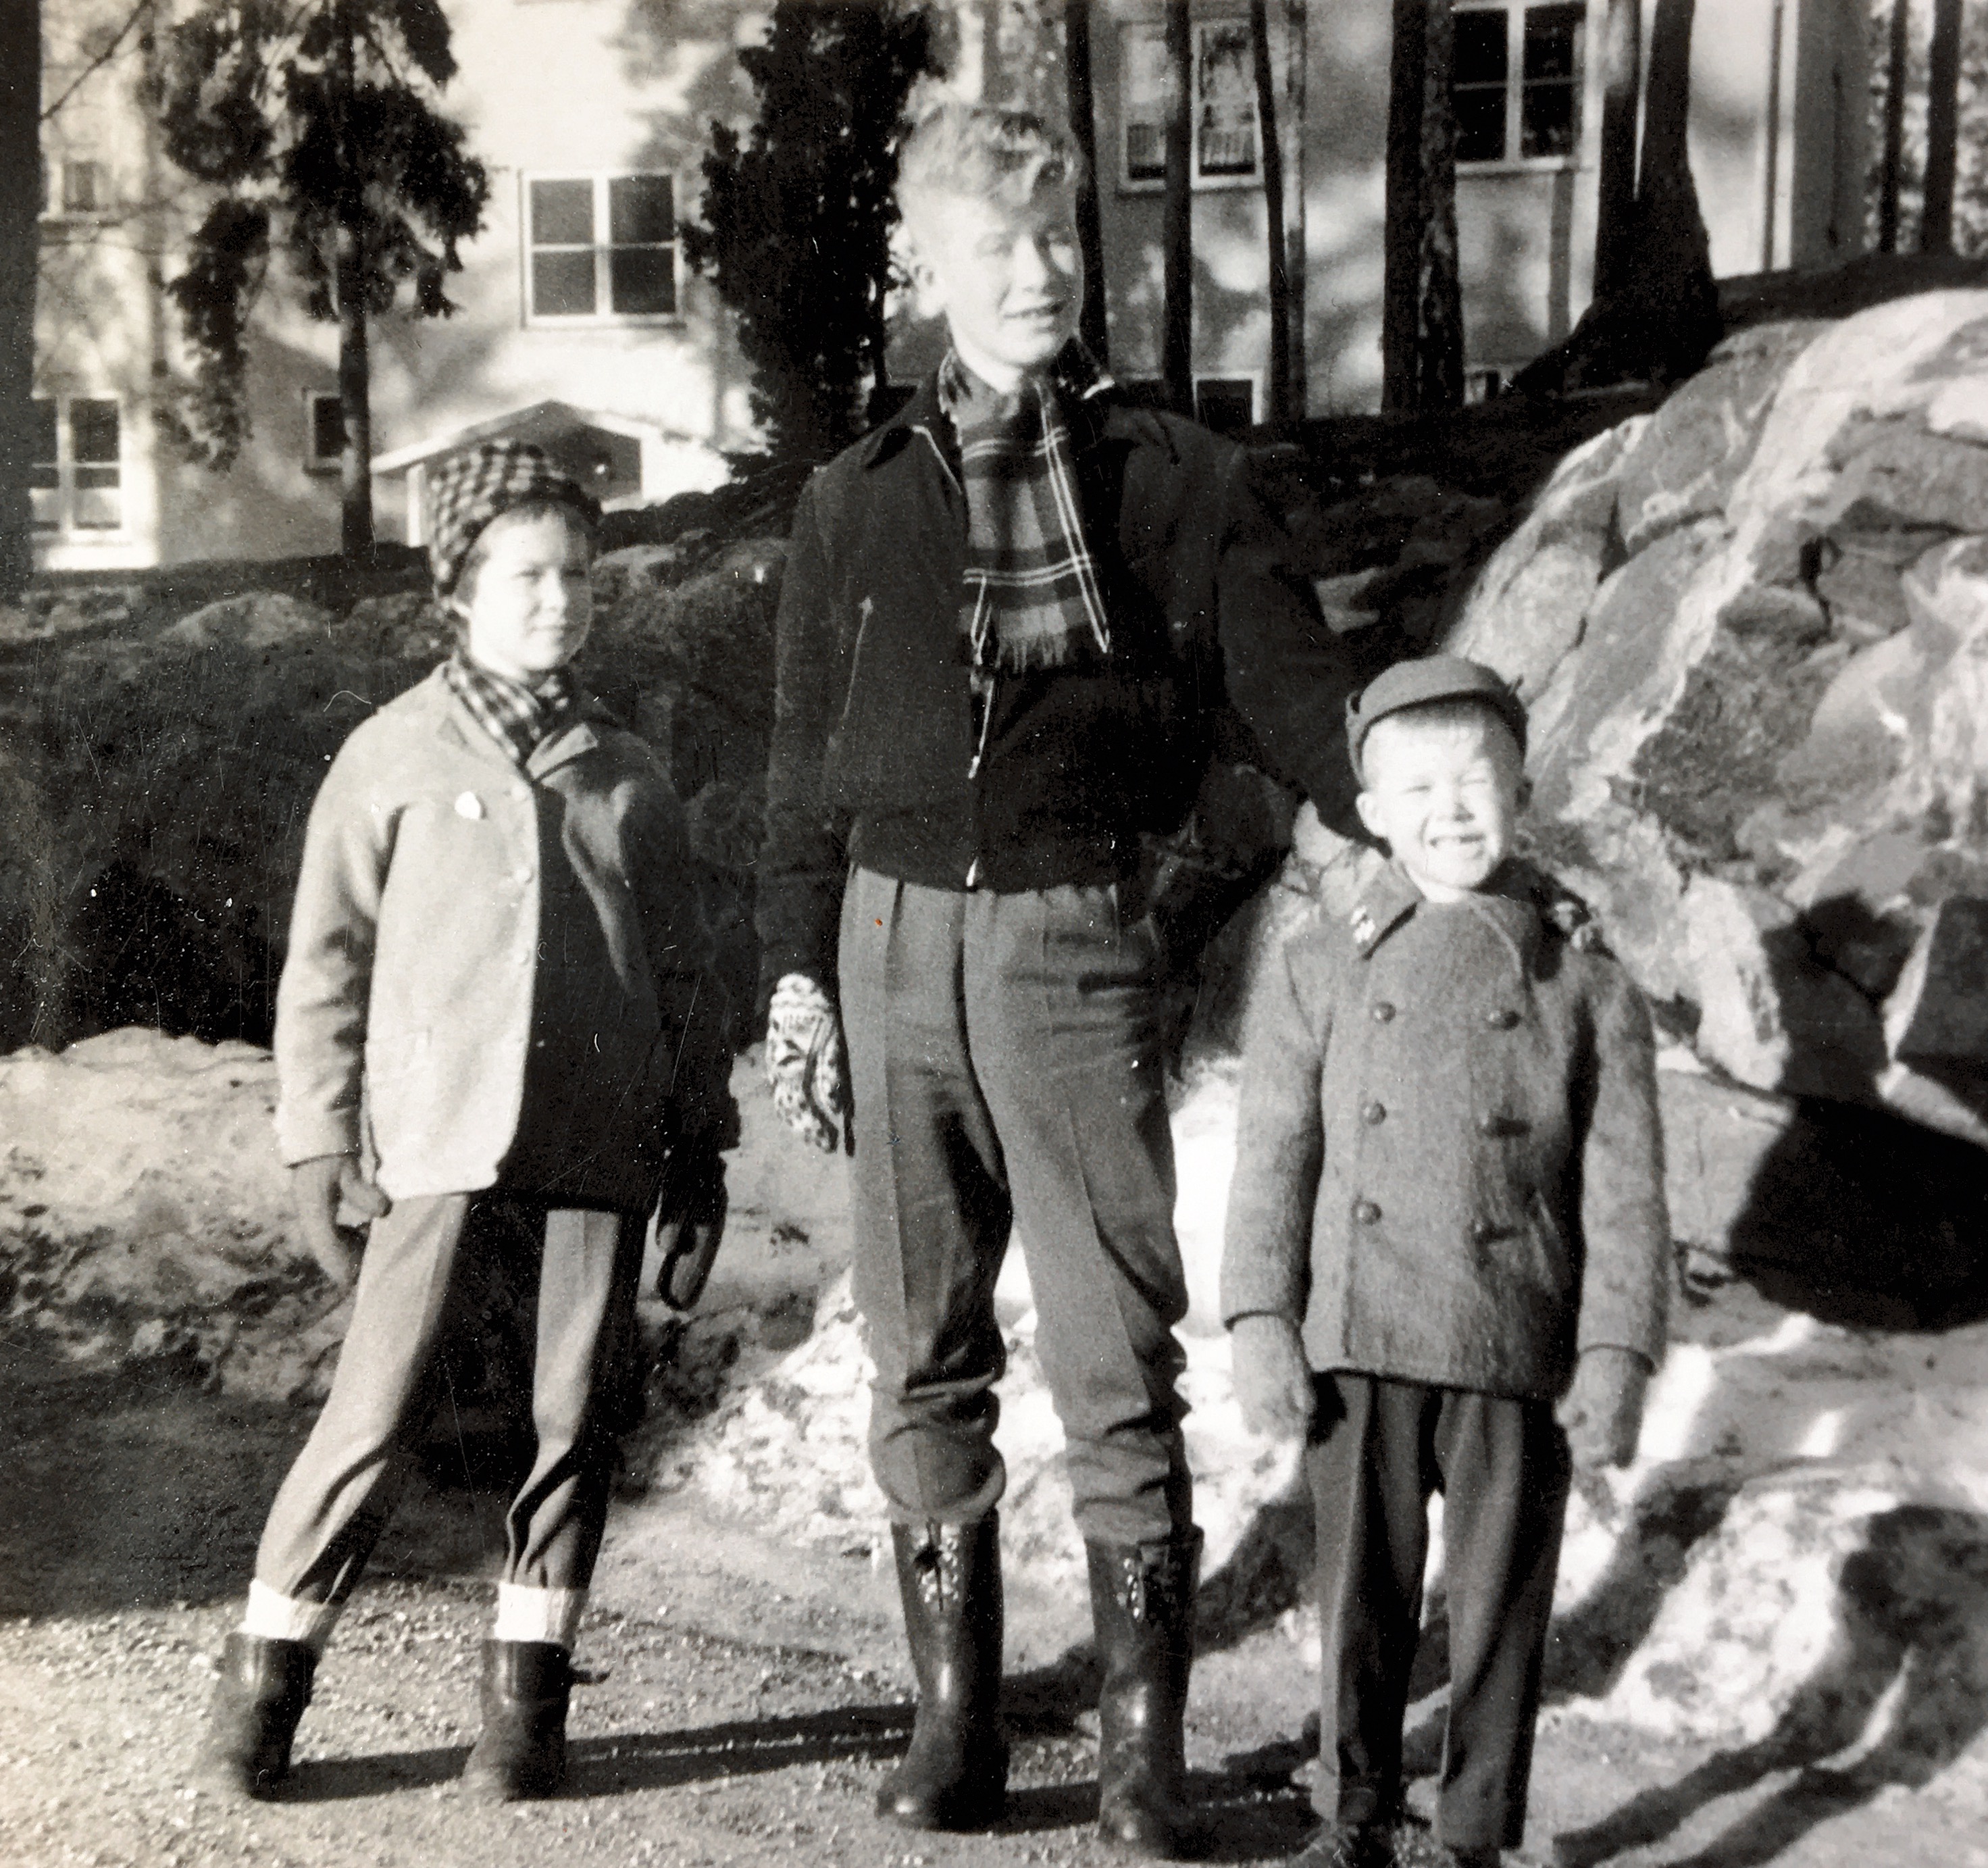 Three siblings in 1957